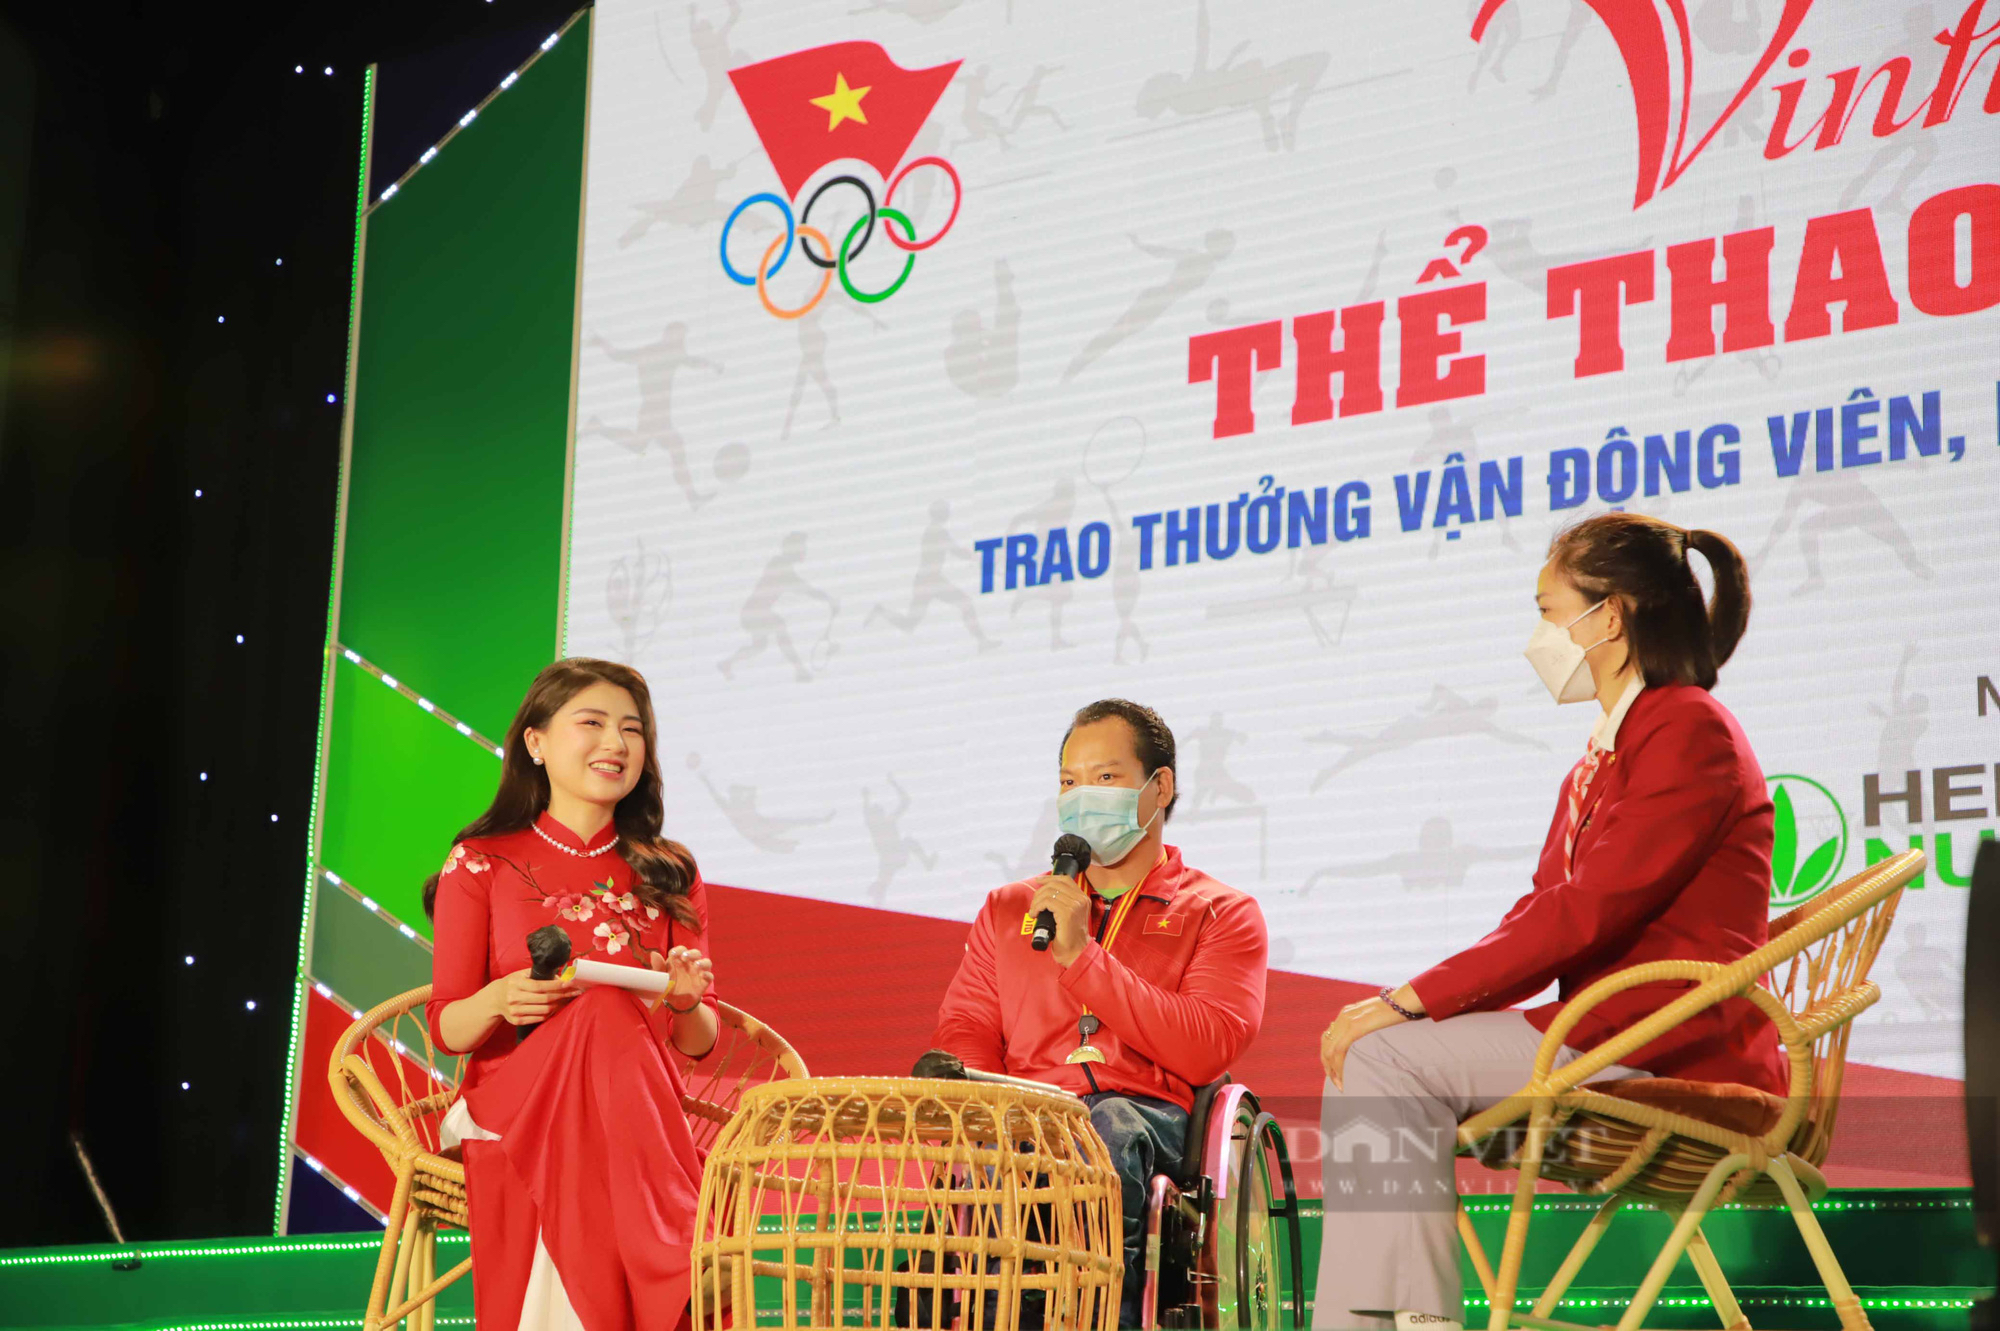 HLV Park Hang-seo và Quang Hải vắng mặt ở Lễ vinh danh của Thể thao Việt Nam - Ảnh 4.